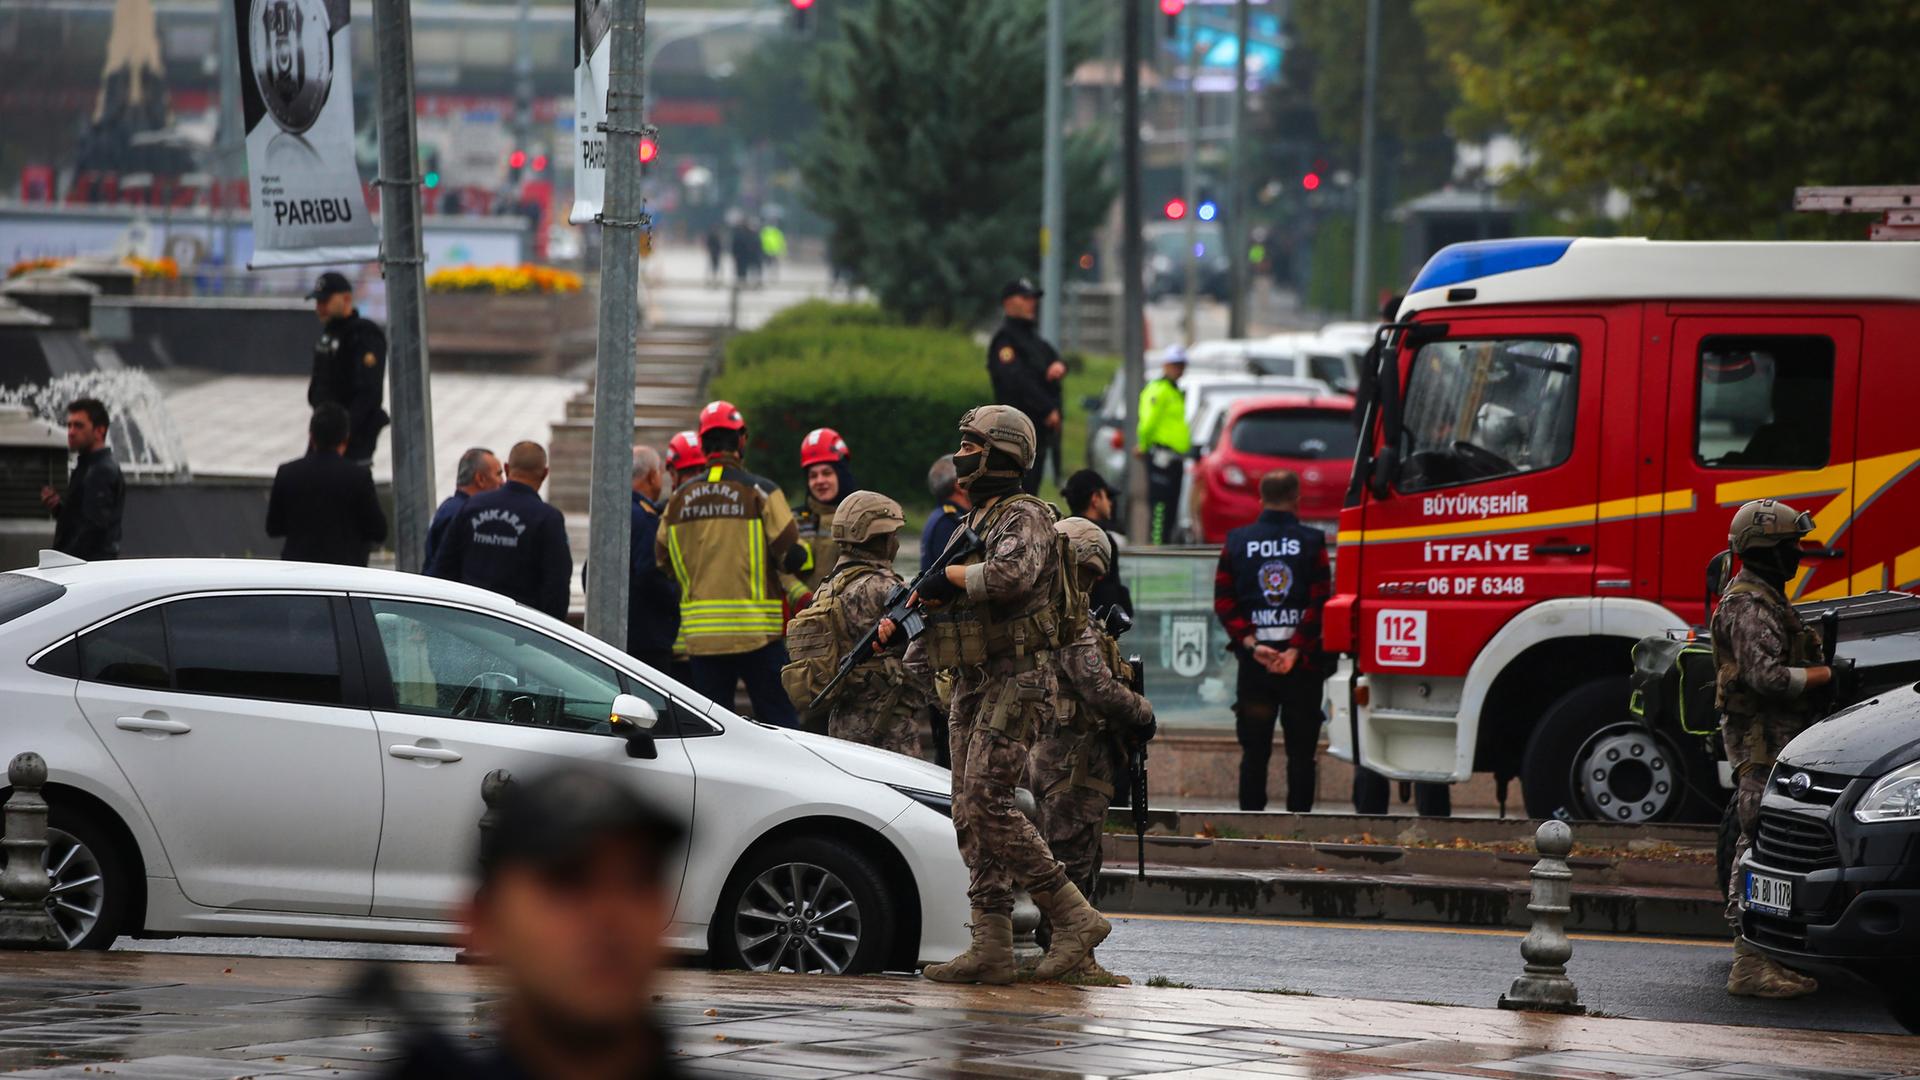 Explosion in der Hauptstadt - Türkische Regierung meldet Bombenanschlag in Ankara - zwei Tote und Verletzte